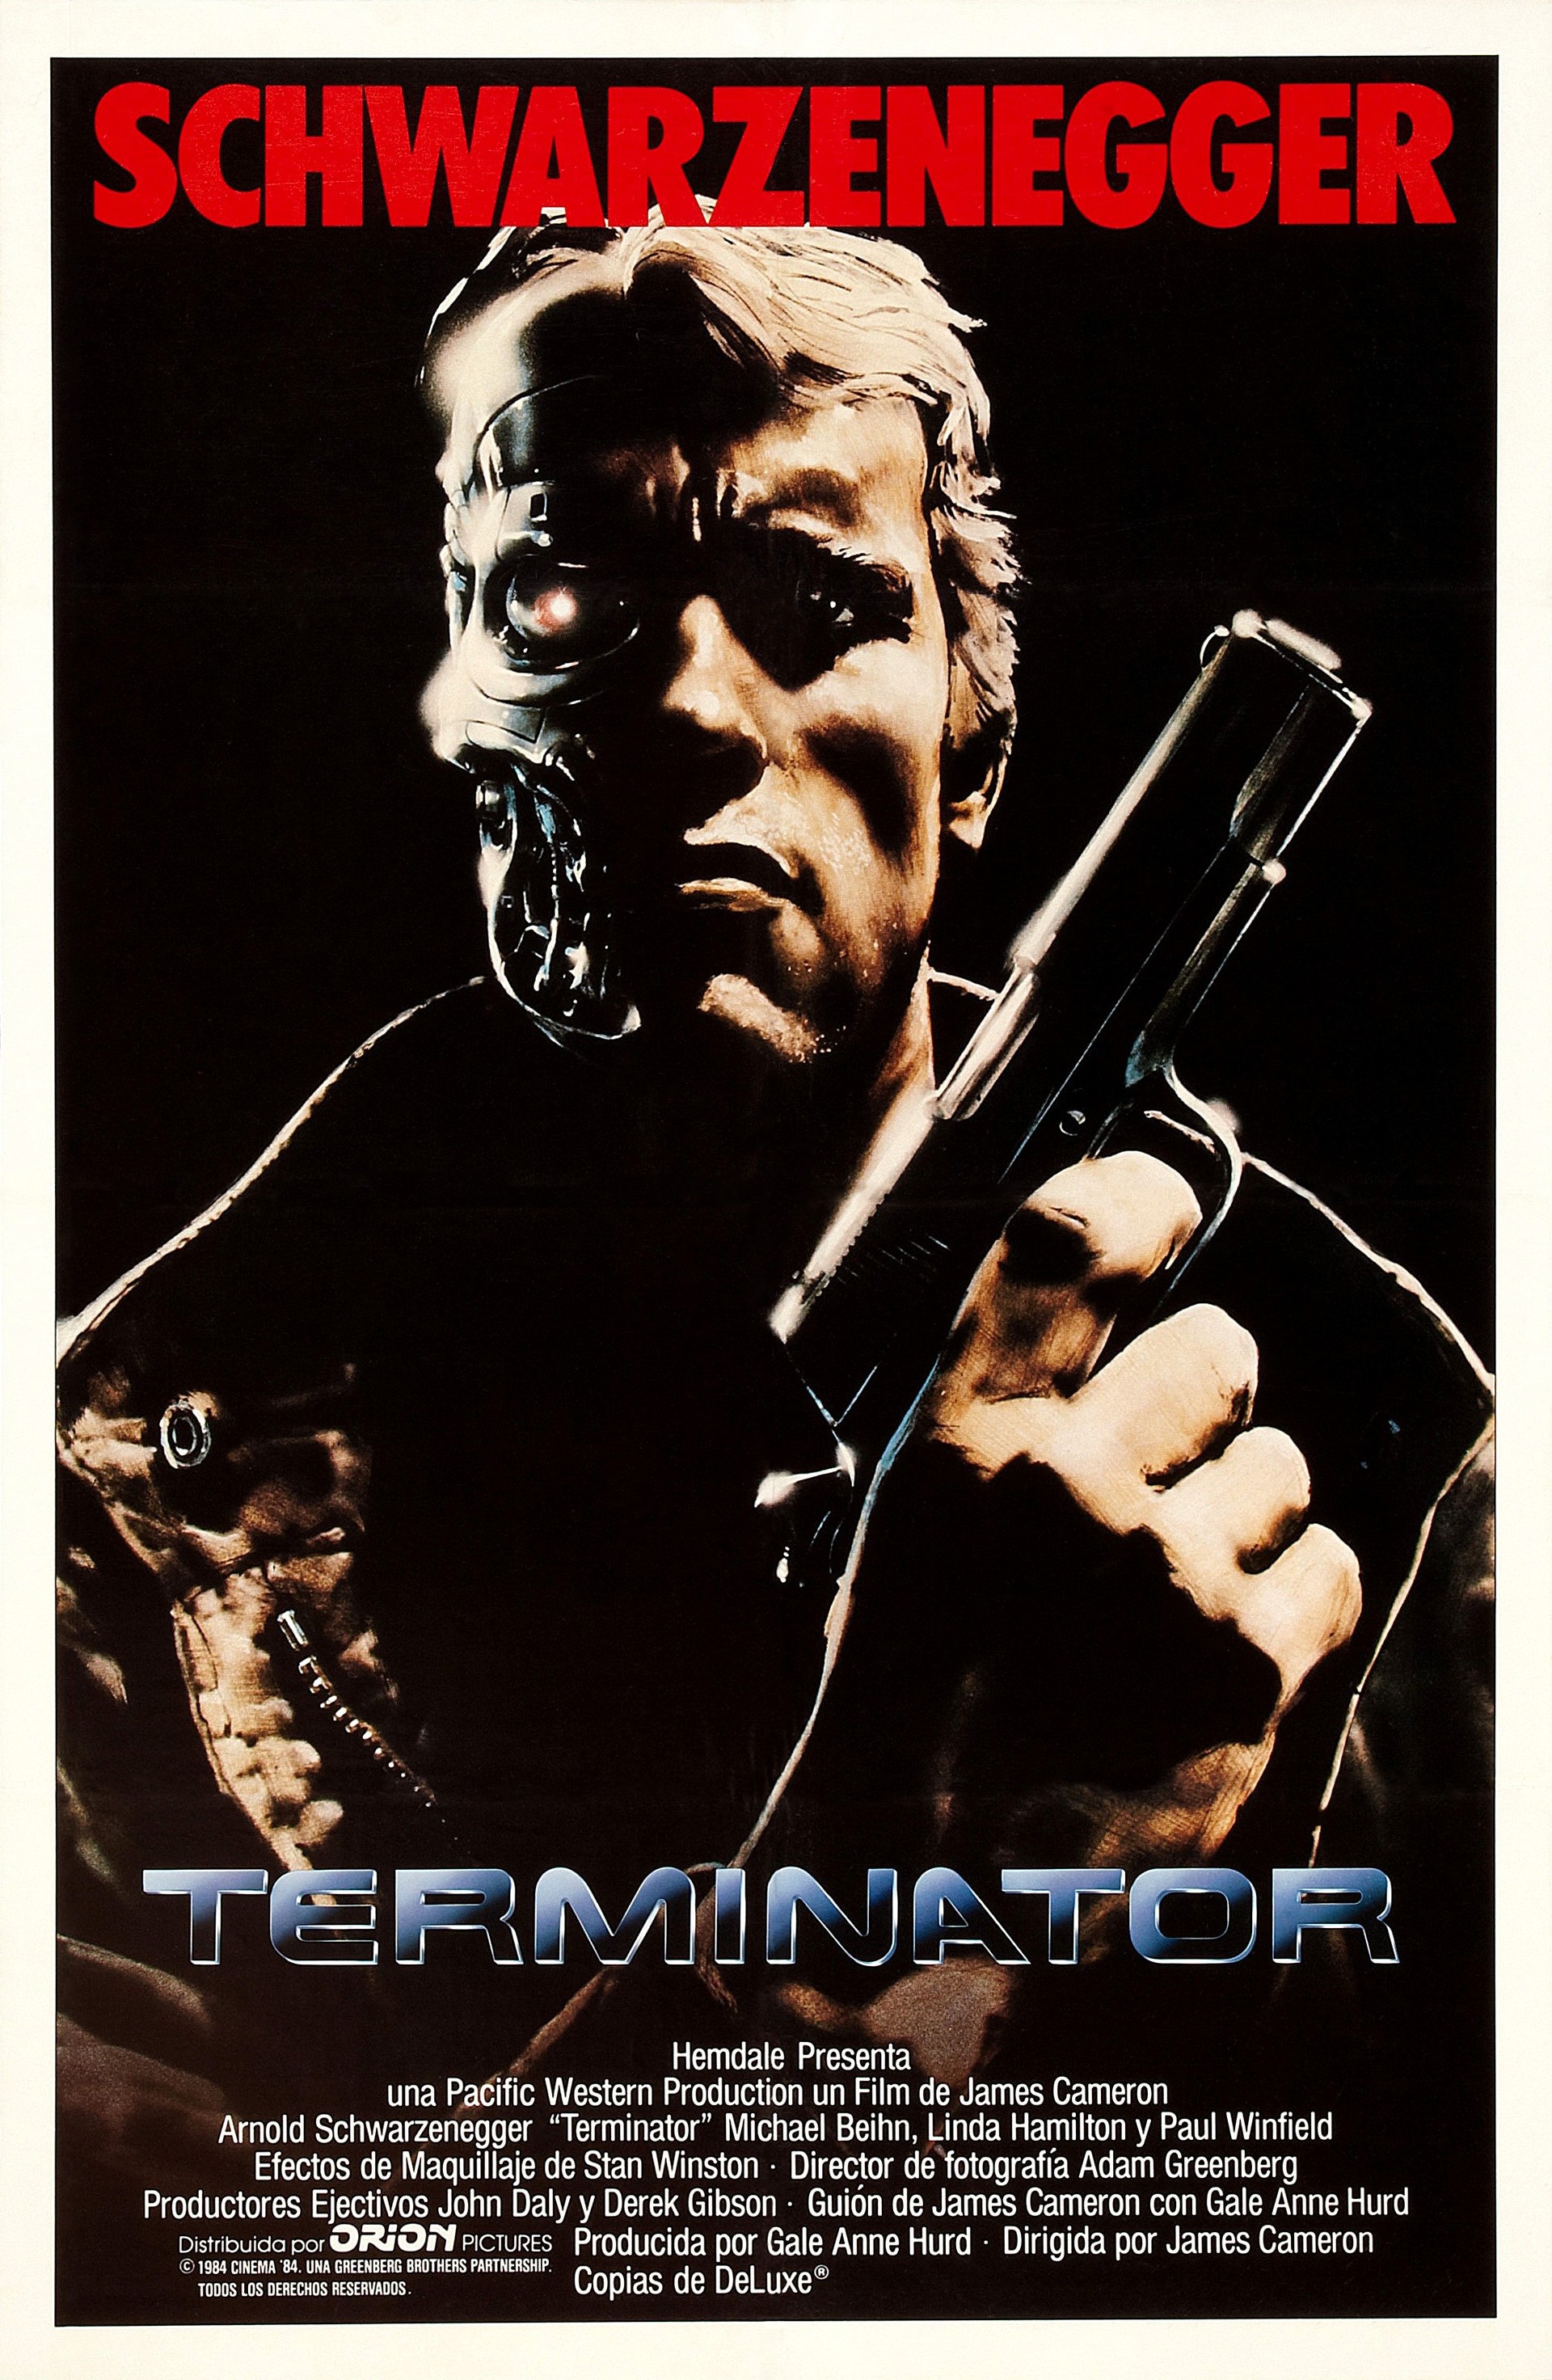 terminator 5 movie poster